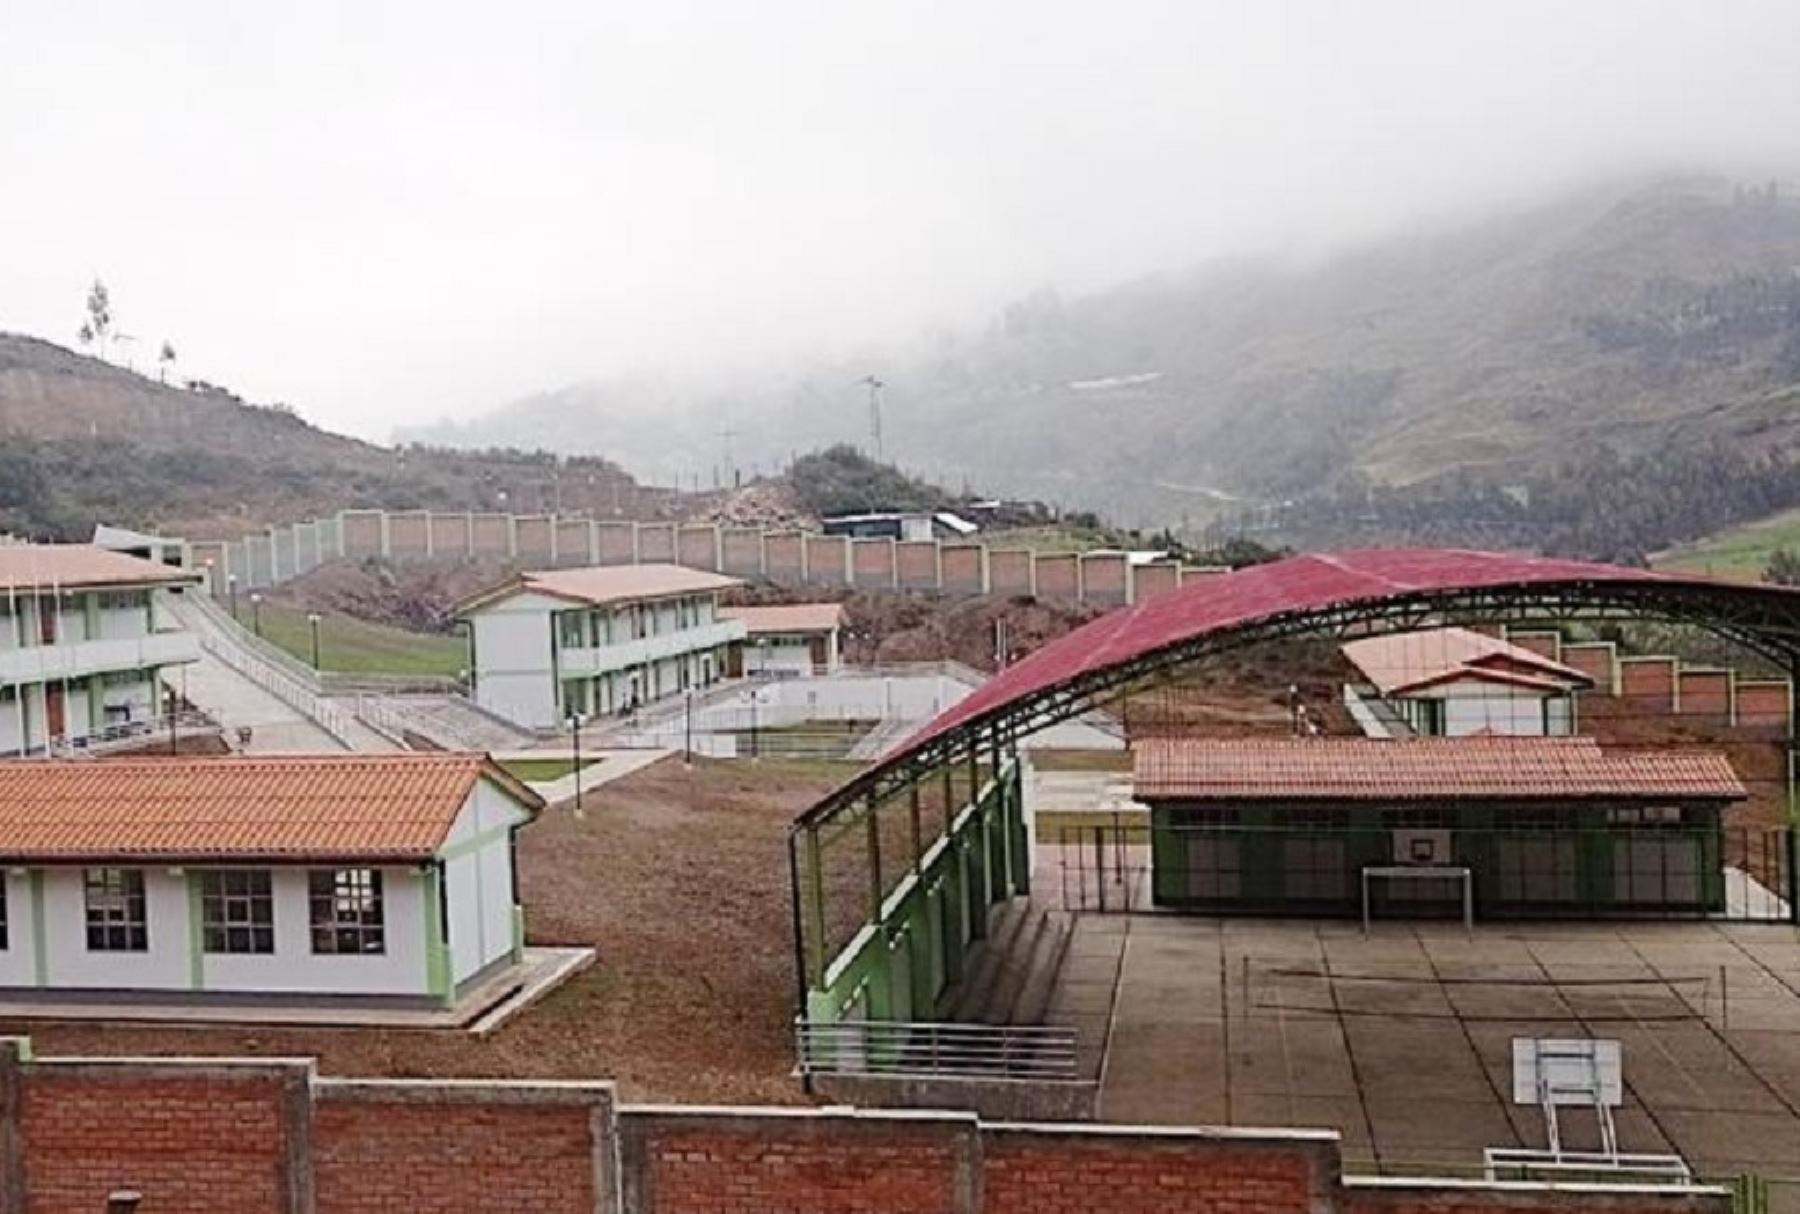 La nueva infraestructura de la institución educativa Juan Velasco Alvarado, ubicada en la localidad de Tarica, distrito de Cusca, provincia de Corongo, departamento de Áncash, se encuentra lista para el inicio de clases presenciales en marzo próximo.